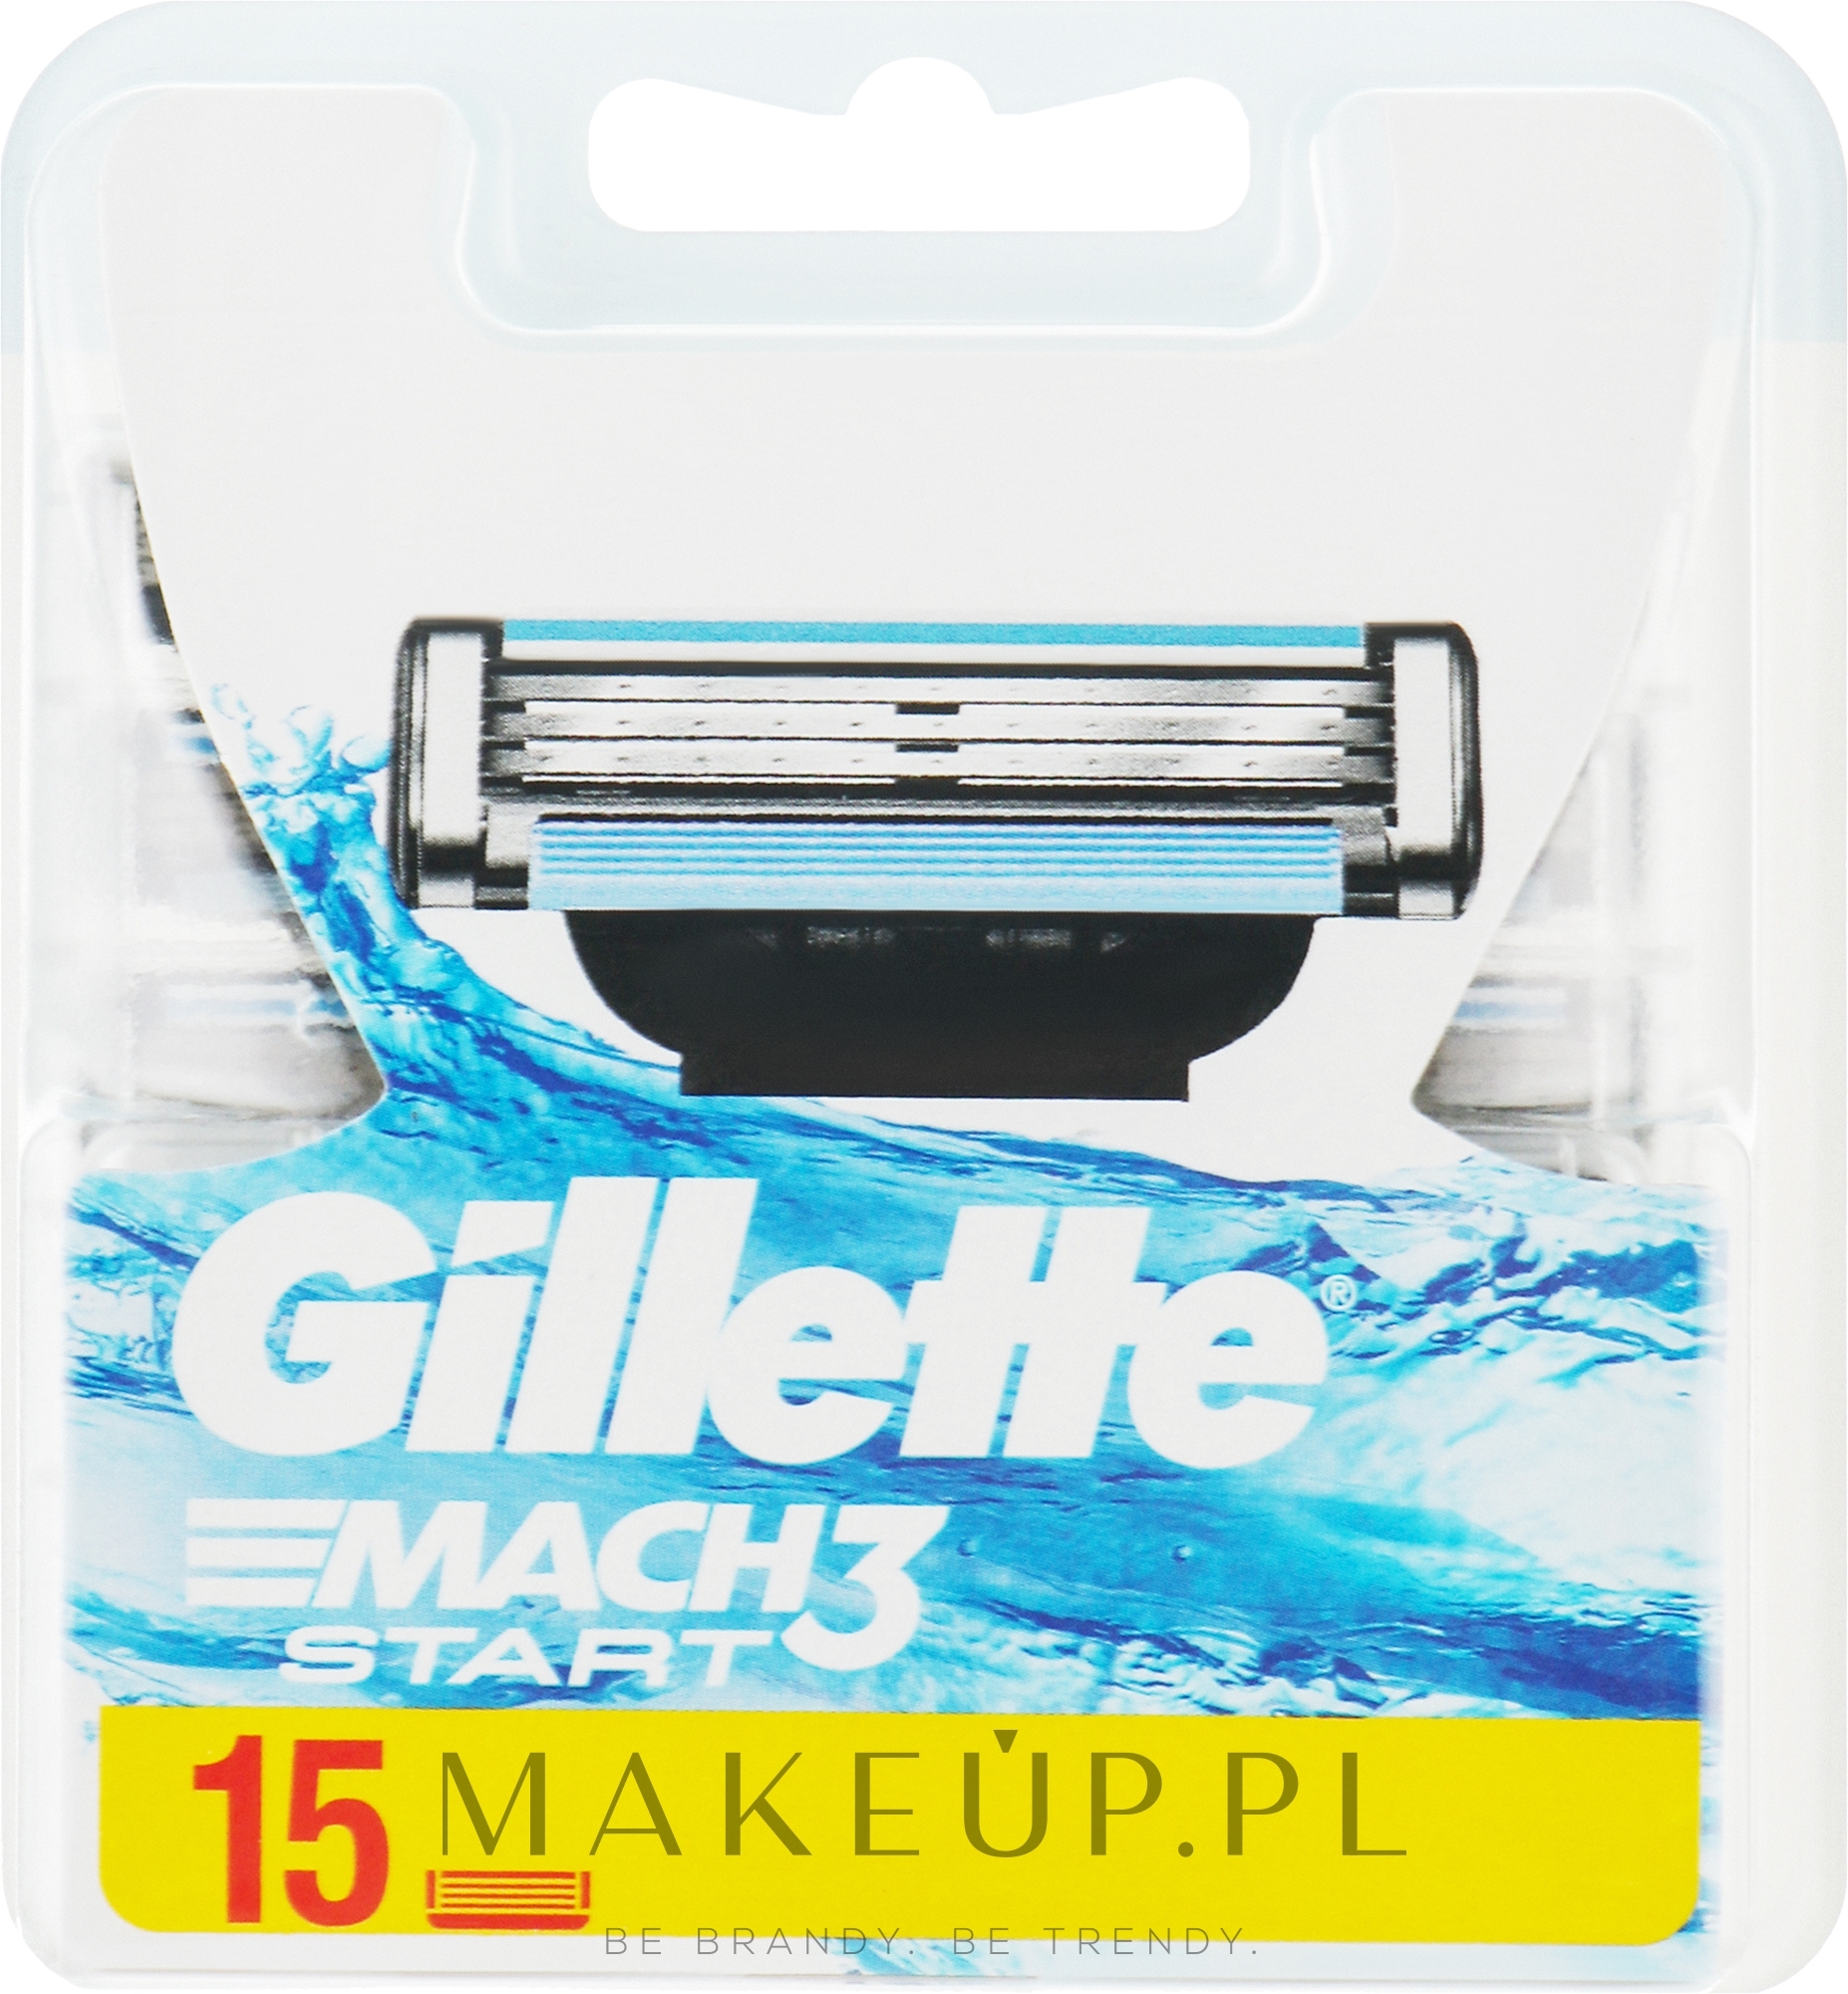 Wymienne ostrza do golenia, 15 szt. - Gillette Mach3 Start — Zdjęcie 15 szt.